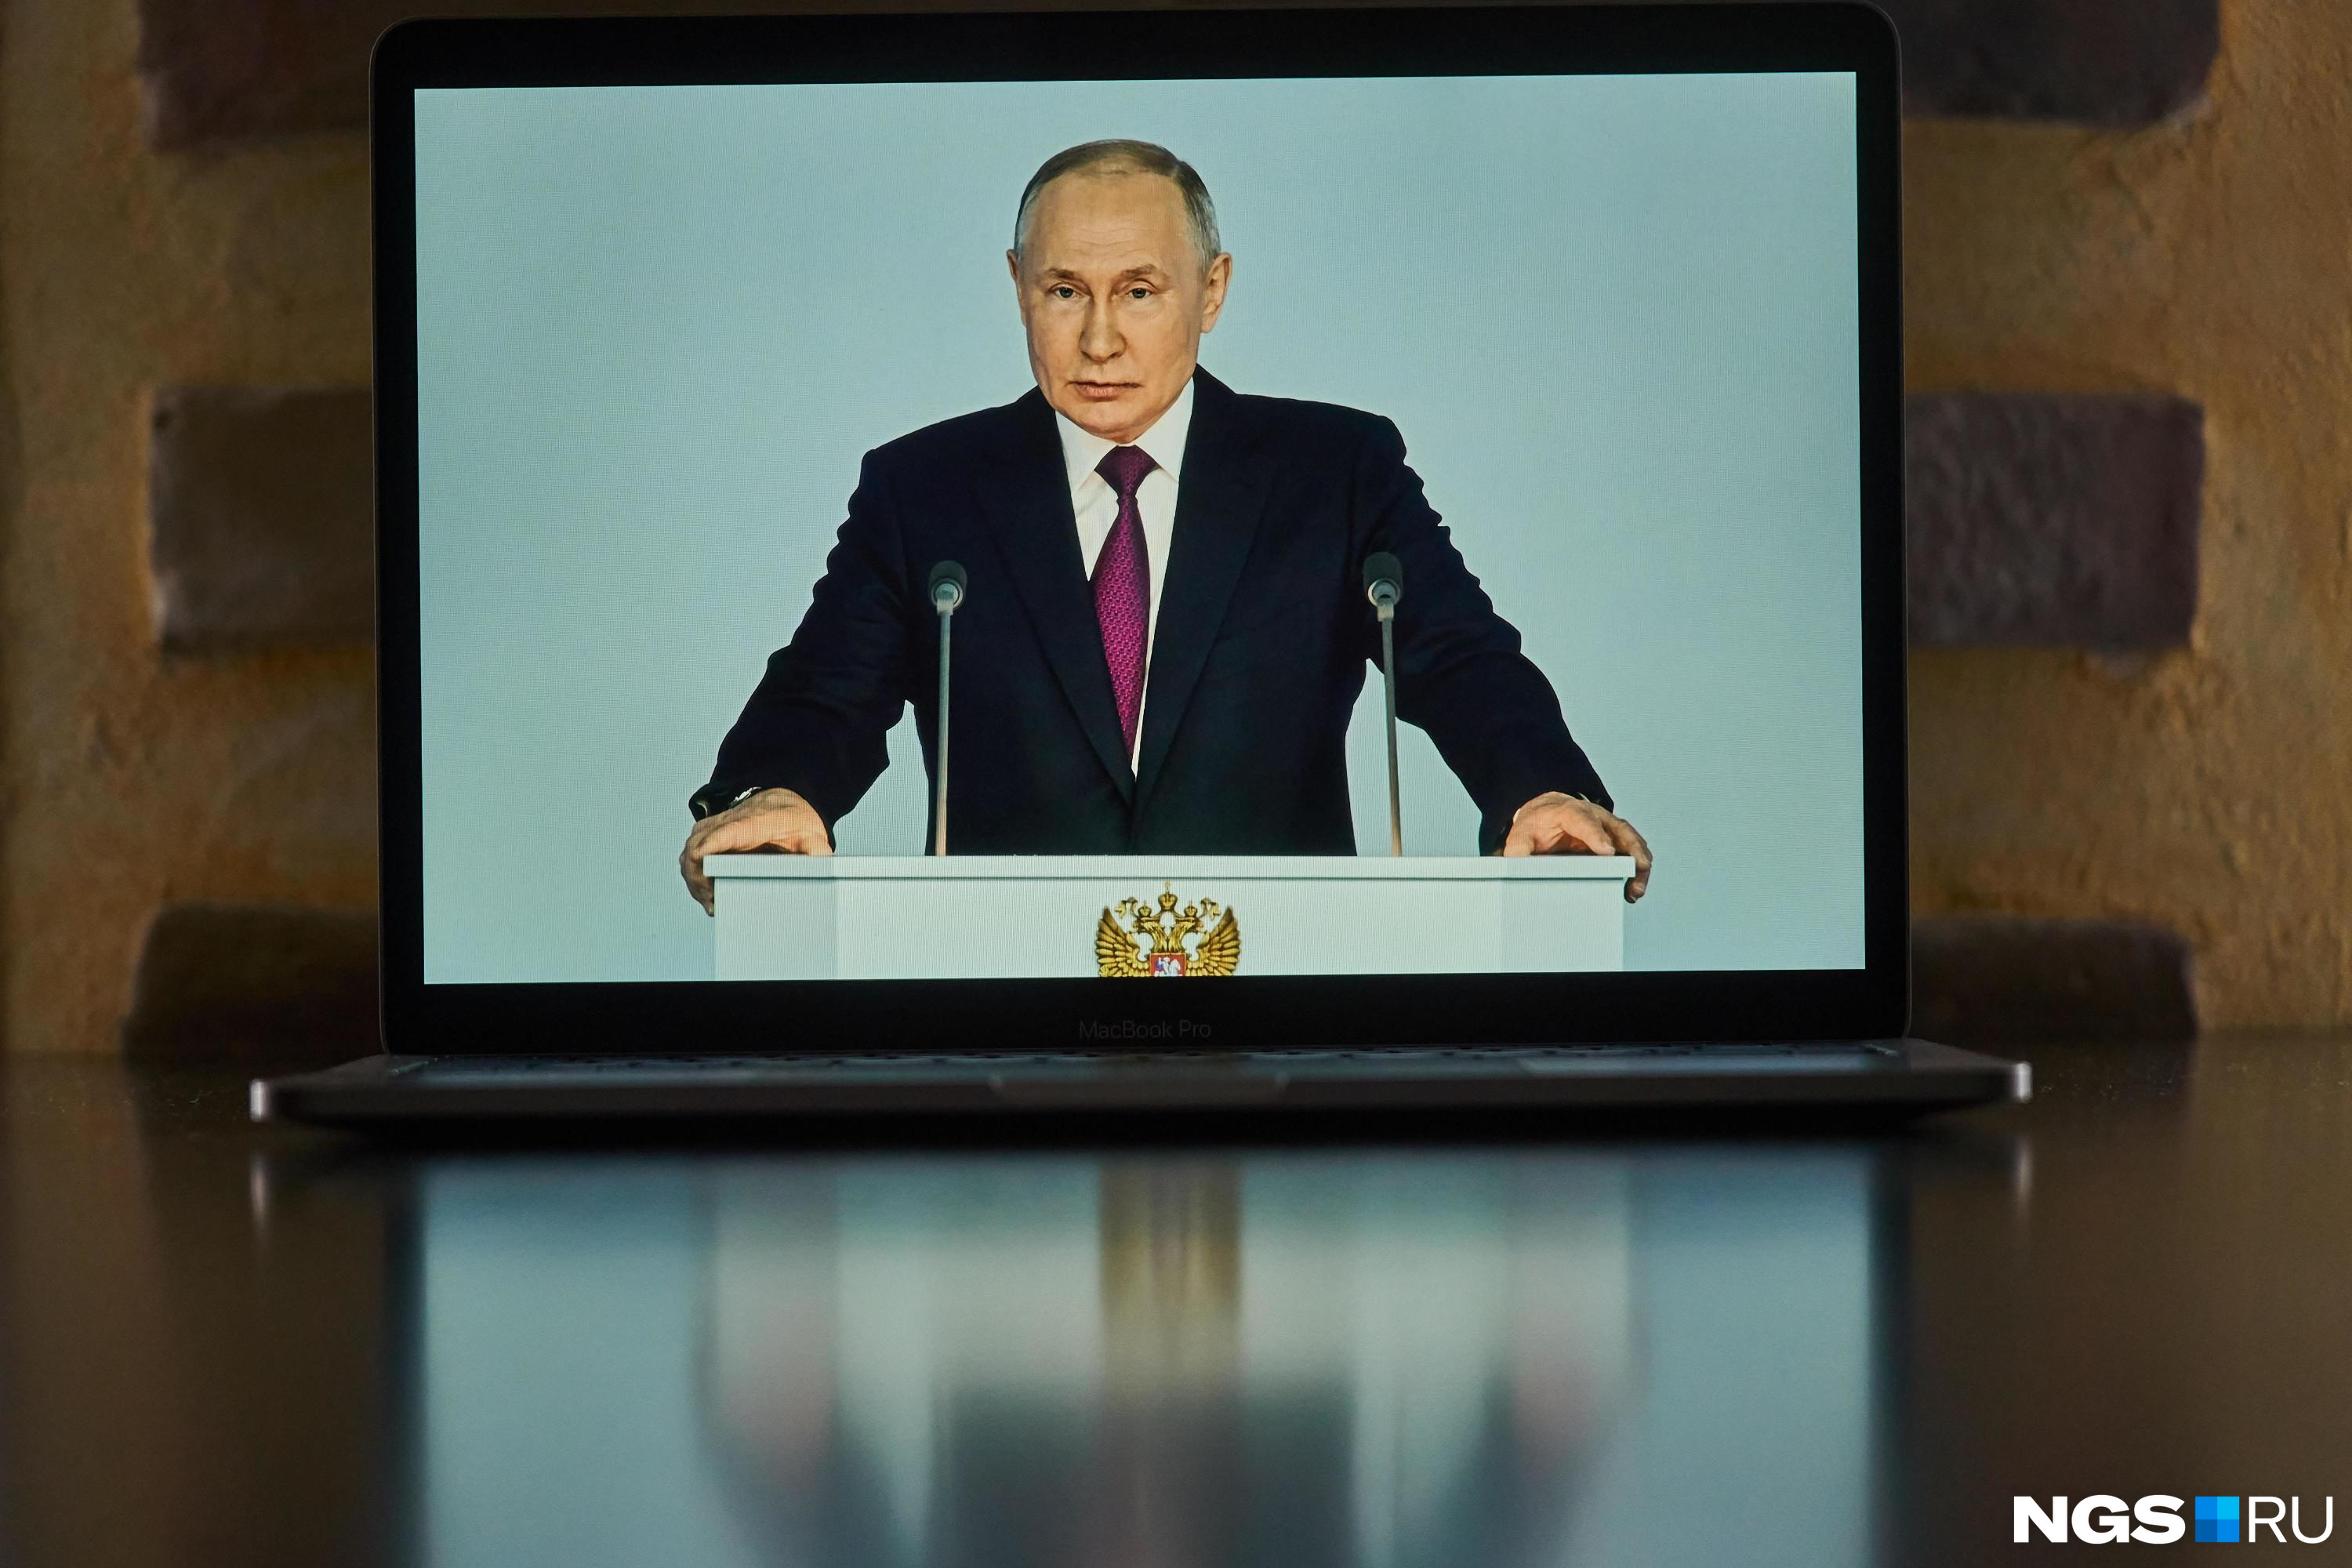 «За добросовестный труд и достижения». Путин наградил политика, тренера и госслужащую Кузбасса